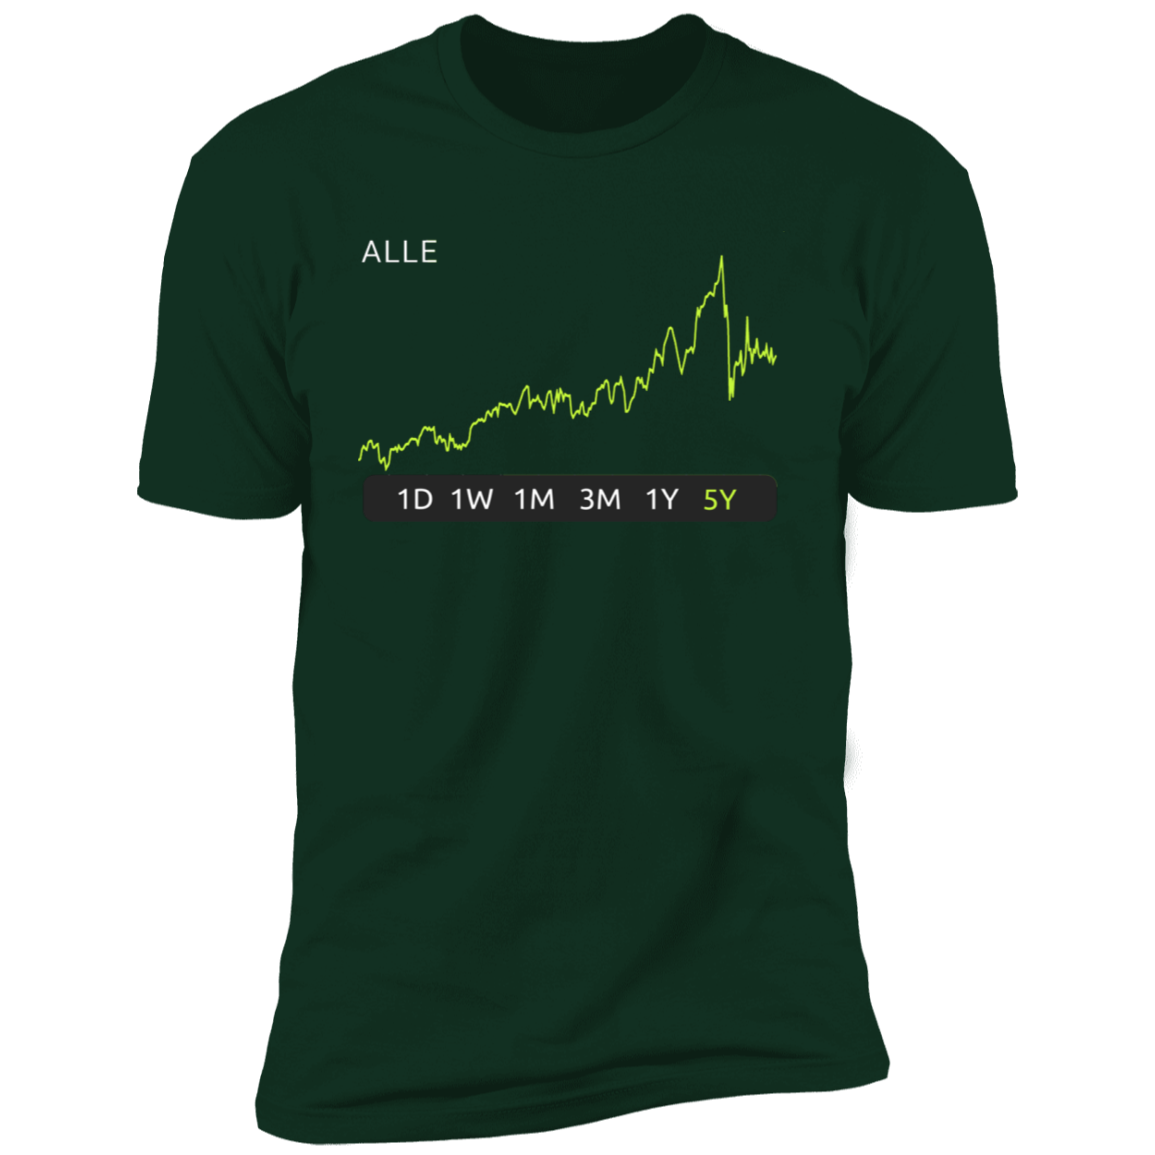 ALLE Stock 5y Premium T-Shirt